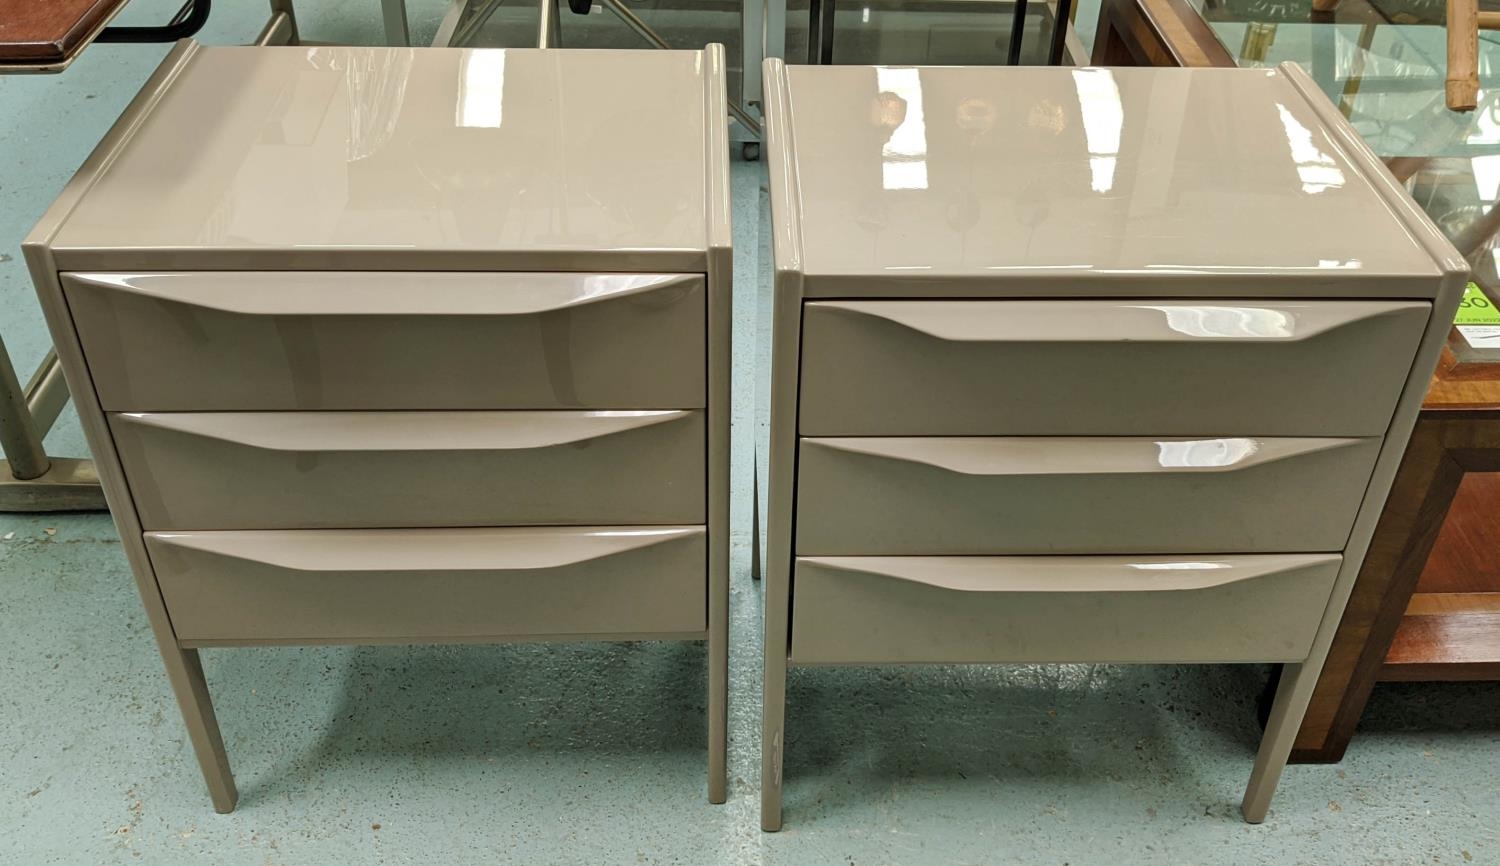 CHELSEA TEXTILES BEDSIDE TABLES, a pair, 50.5cm x 40cm x 64cm, with lip handles. (2)